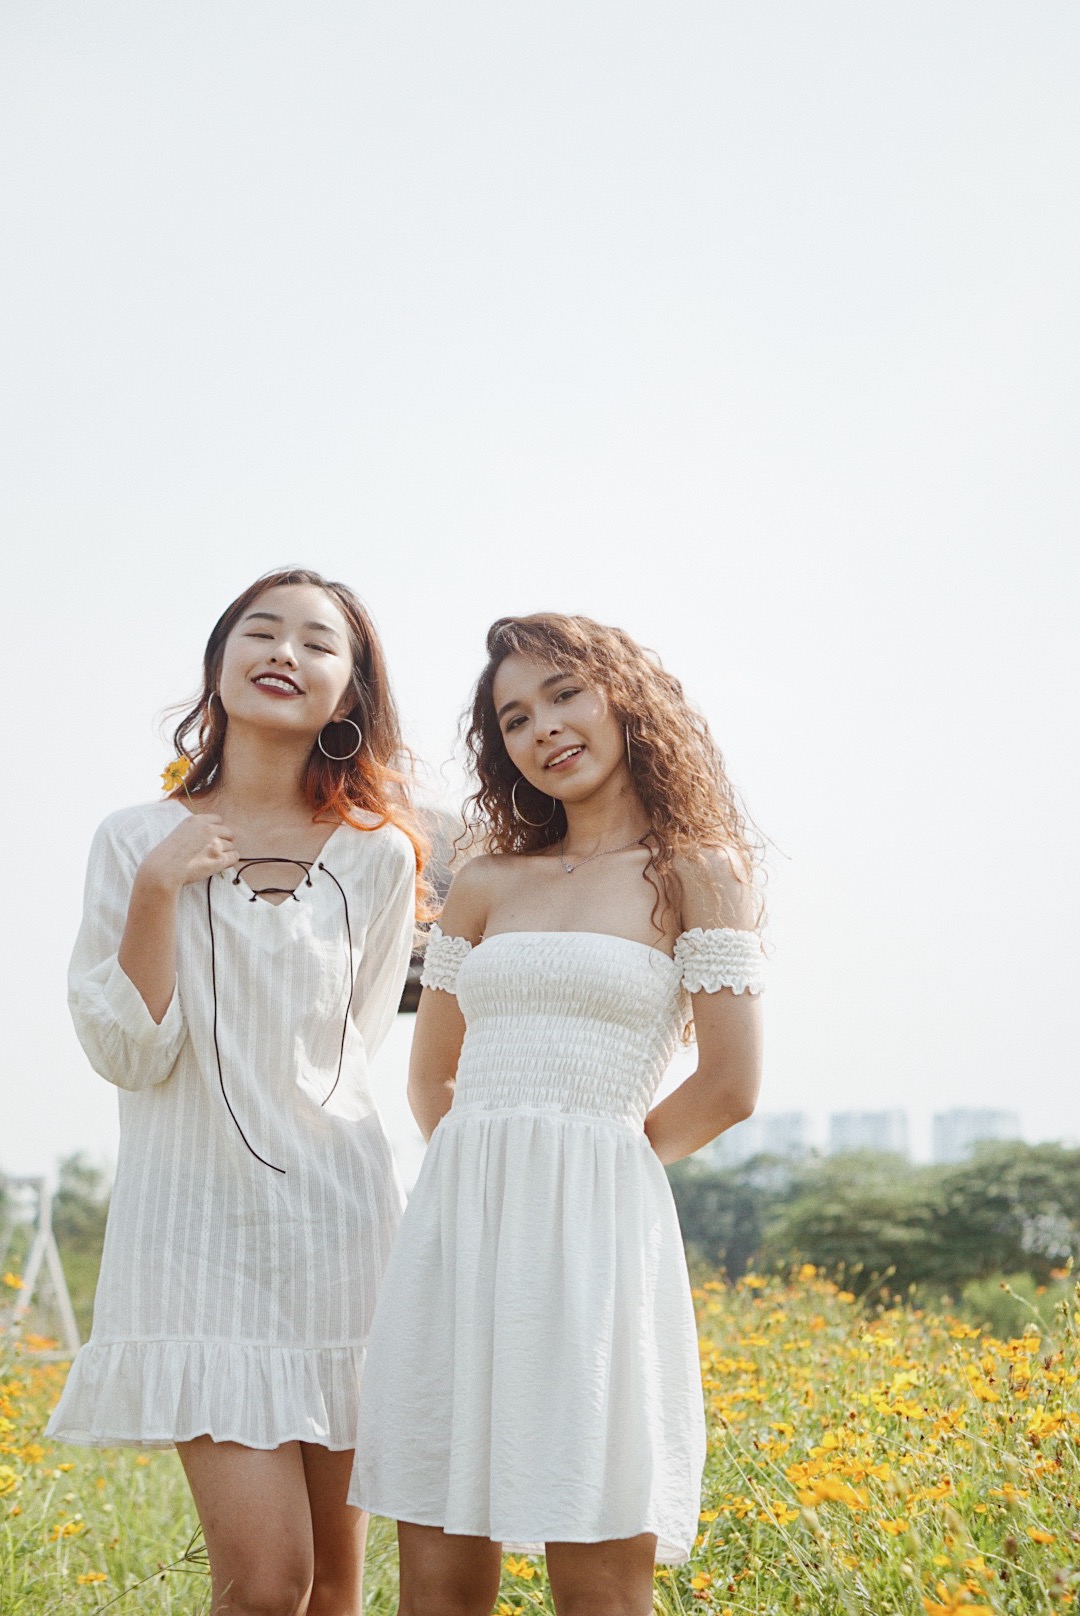 Top 12 shop bán áo trễ vai đẹp ở Hà Nội